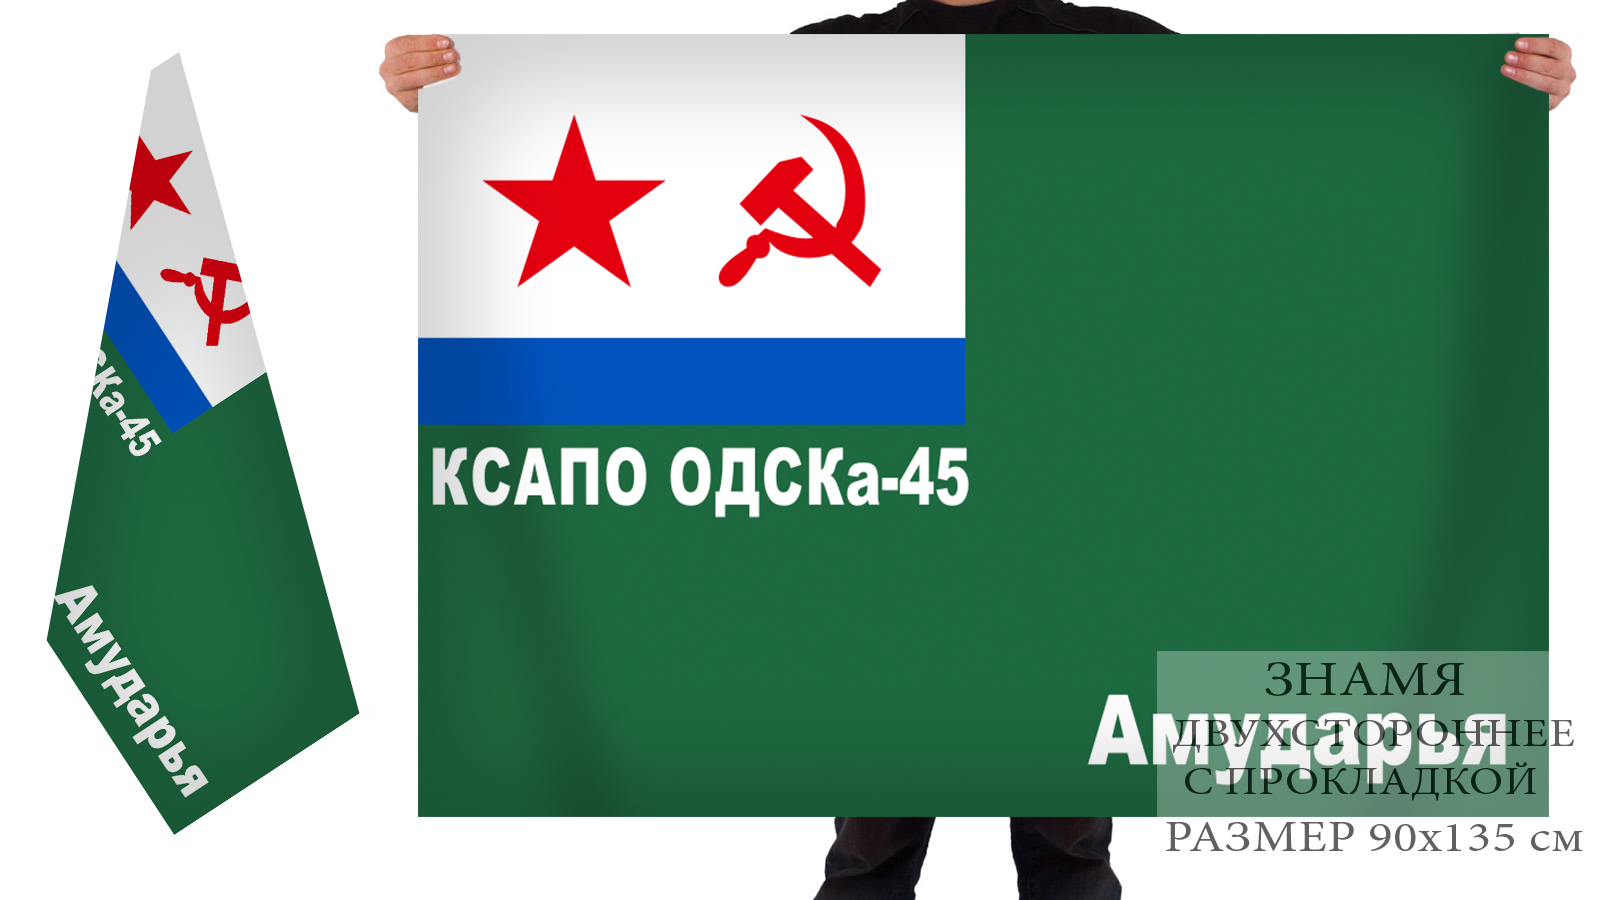 Большой флаг ОДСКА-45 КСАПО